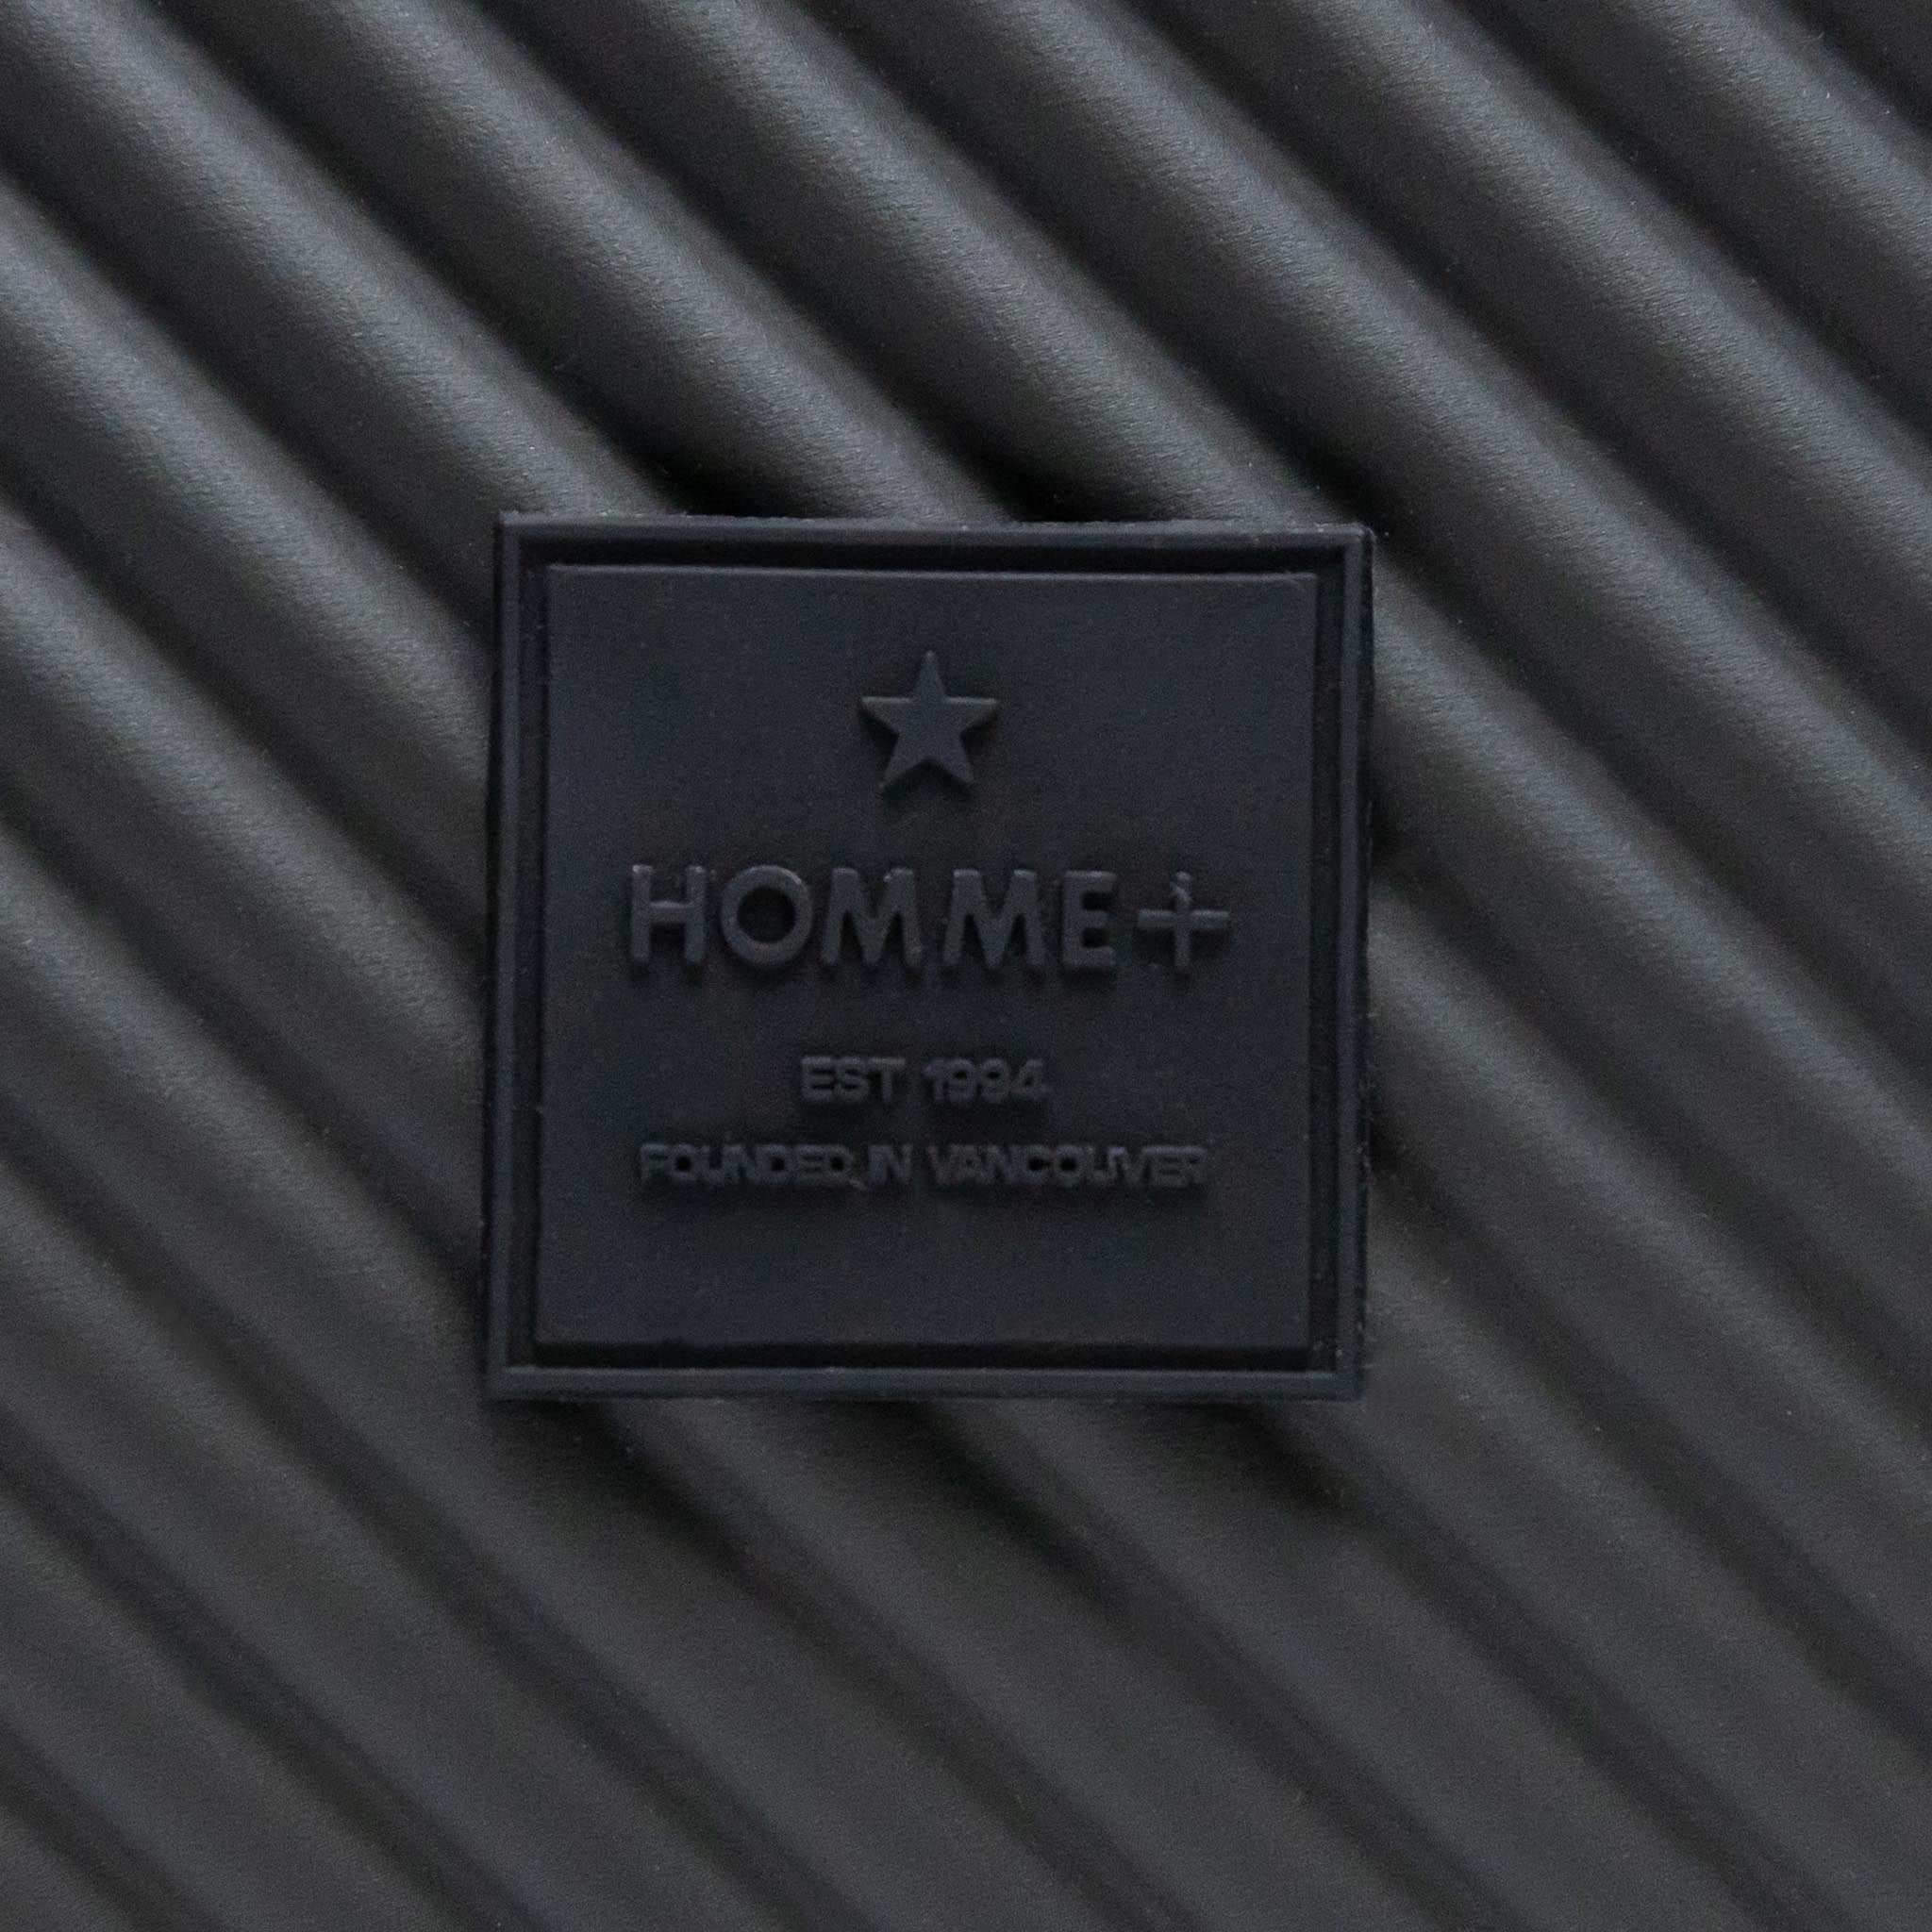 HOMME+ Belt Bag Black/Green